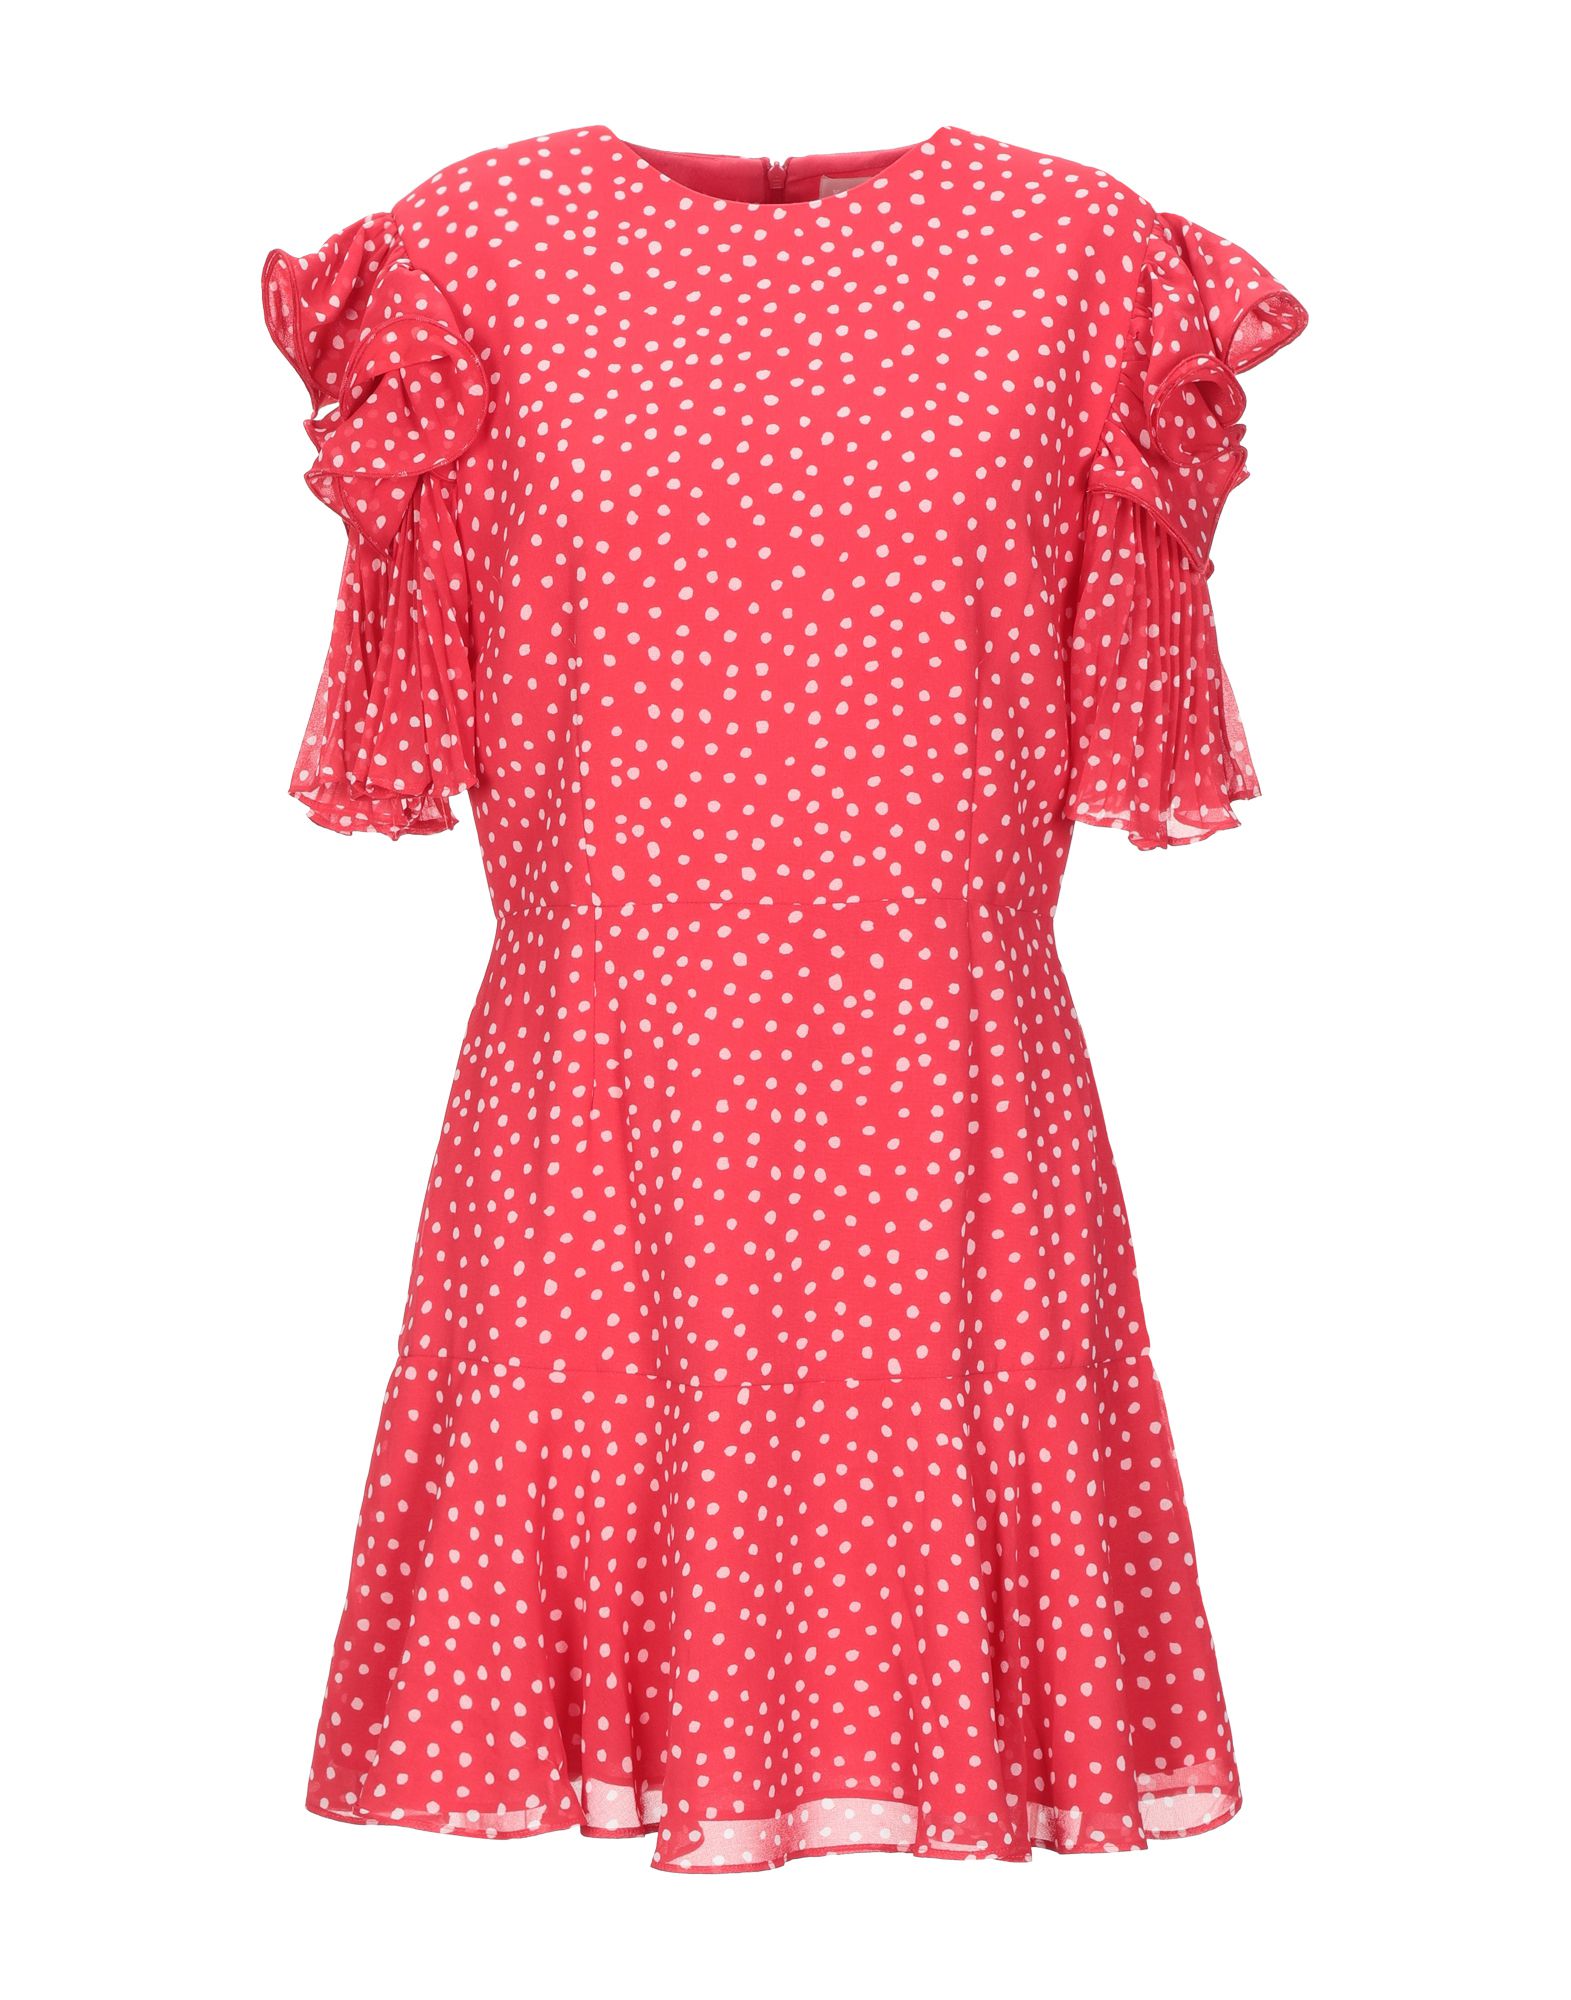 Короткое платье  - Красный цвет